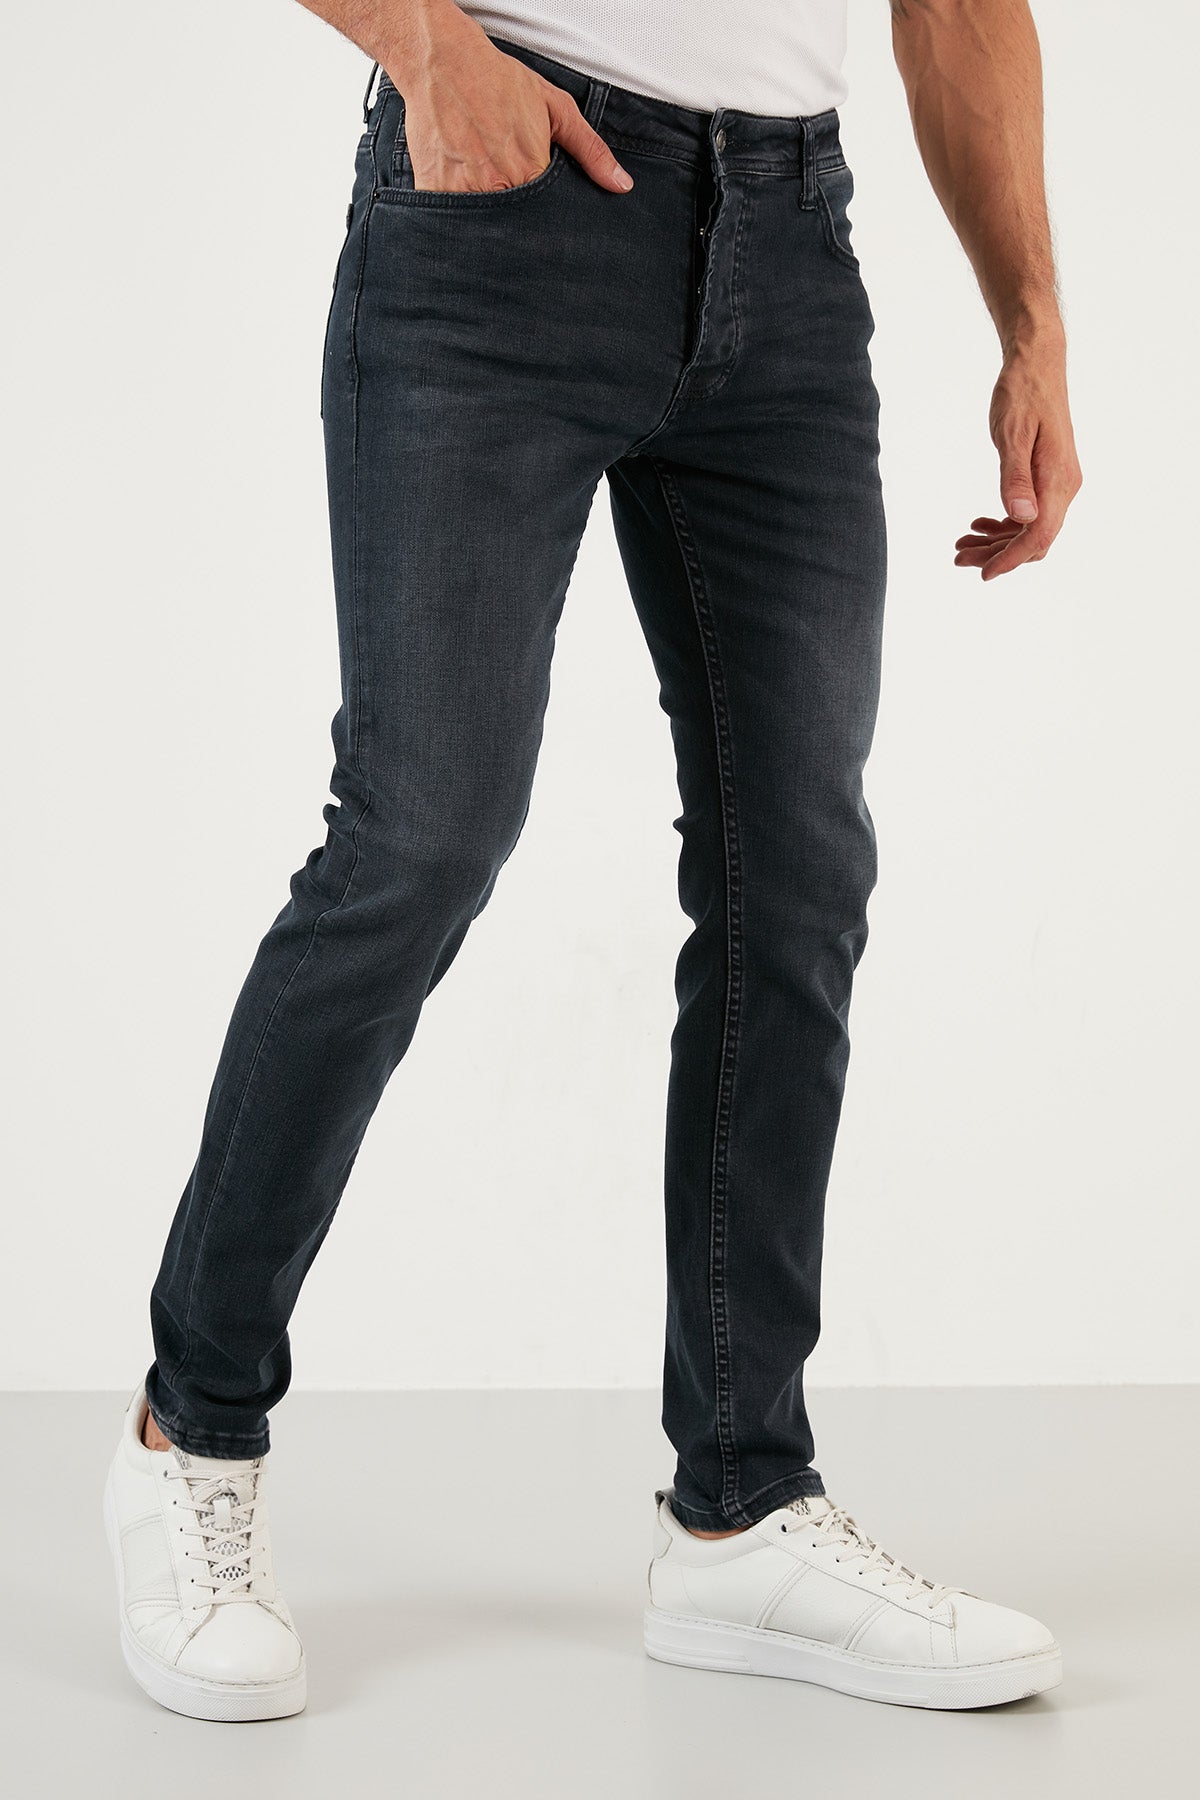 Buratti Pamuklu Normal Bel Slim Fit Dar Paça Jeans Erkek Kot Pantolon 1114M124NAPOLI LACİVERT